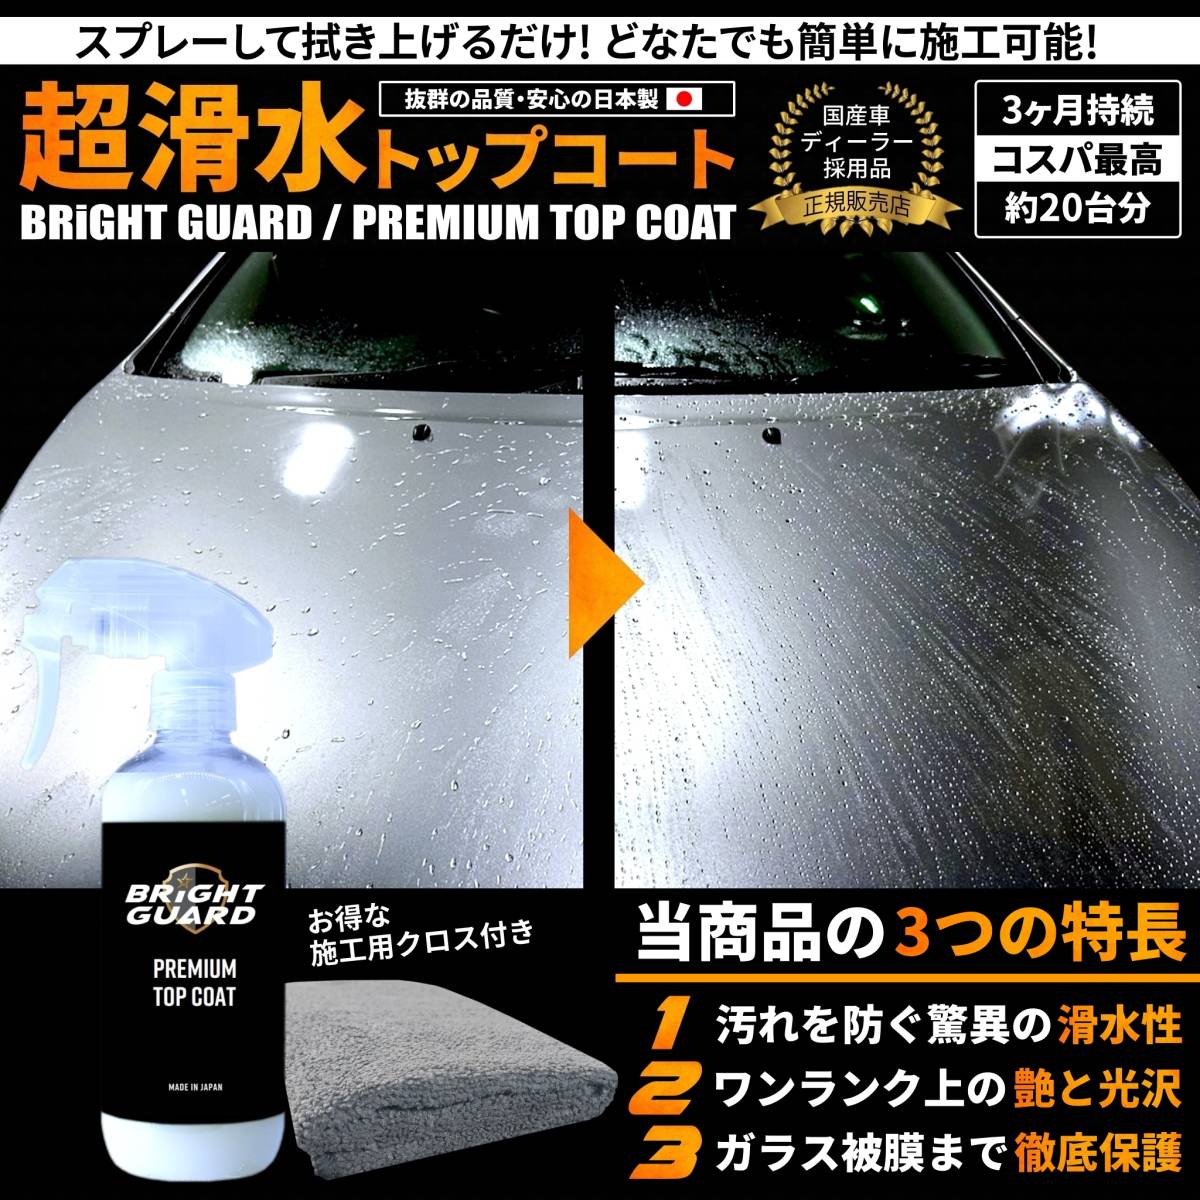 [ стандартный товар ]BRiGHT GUARD сделано в Японии покрытие . premium верхнее покрытие яркий защита легкий пальто скользить вода водоотталкивающий полирование глянец корпус защита 